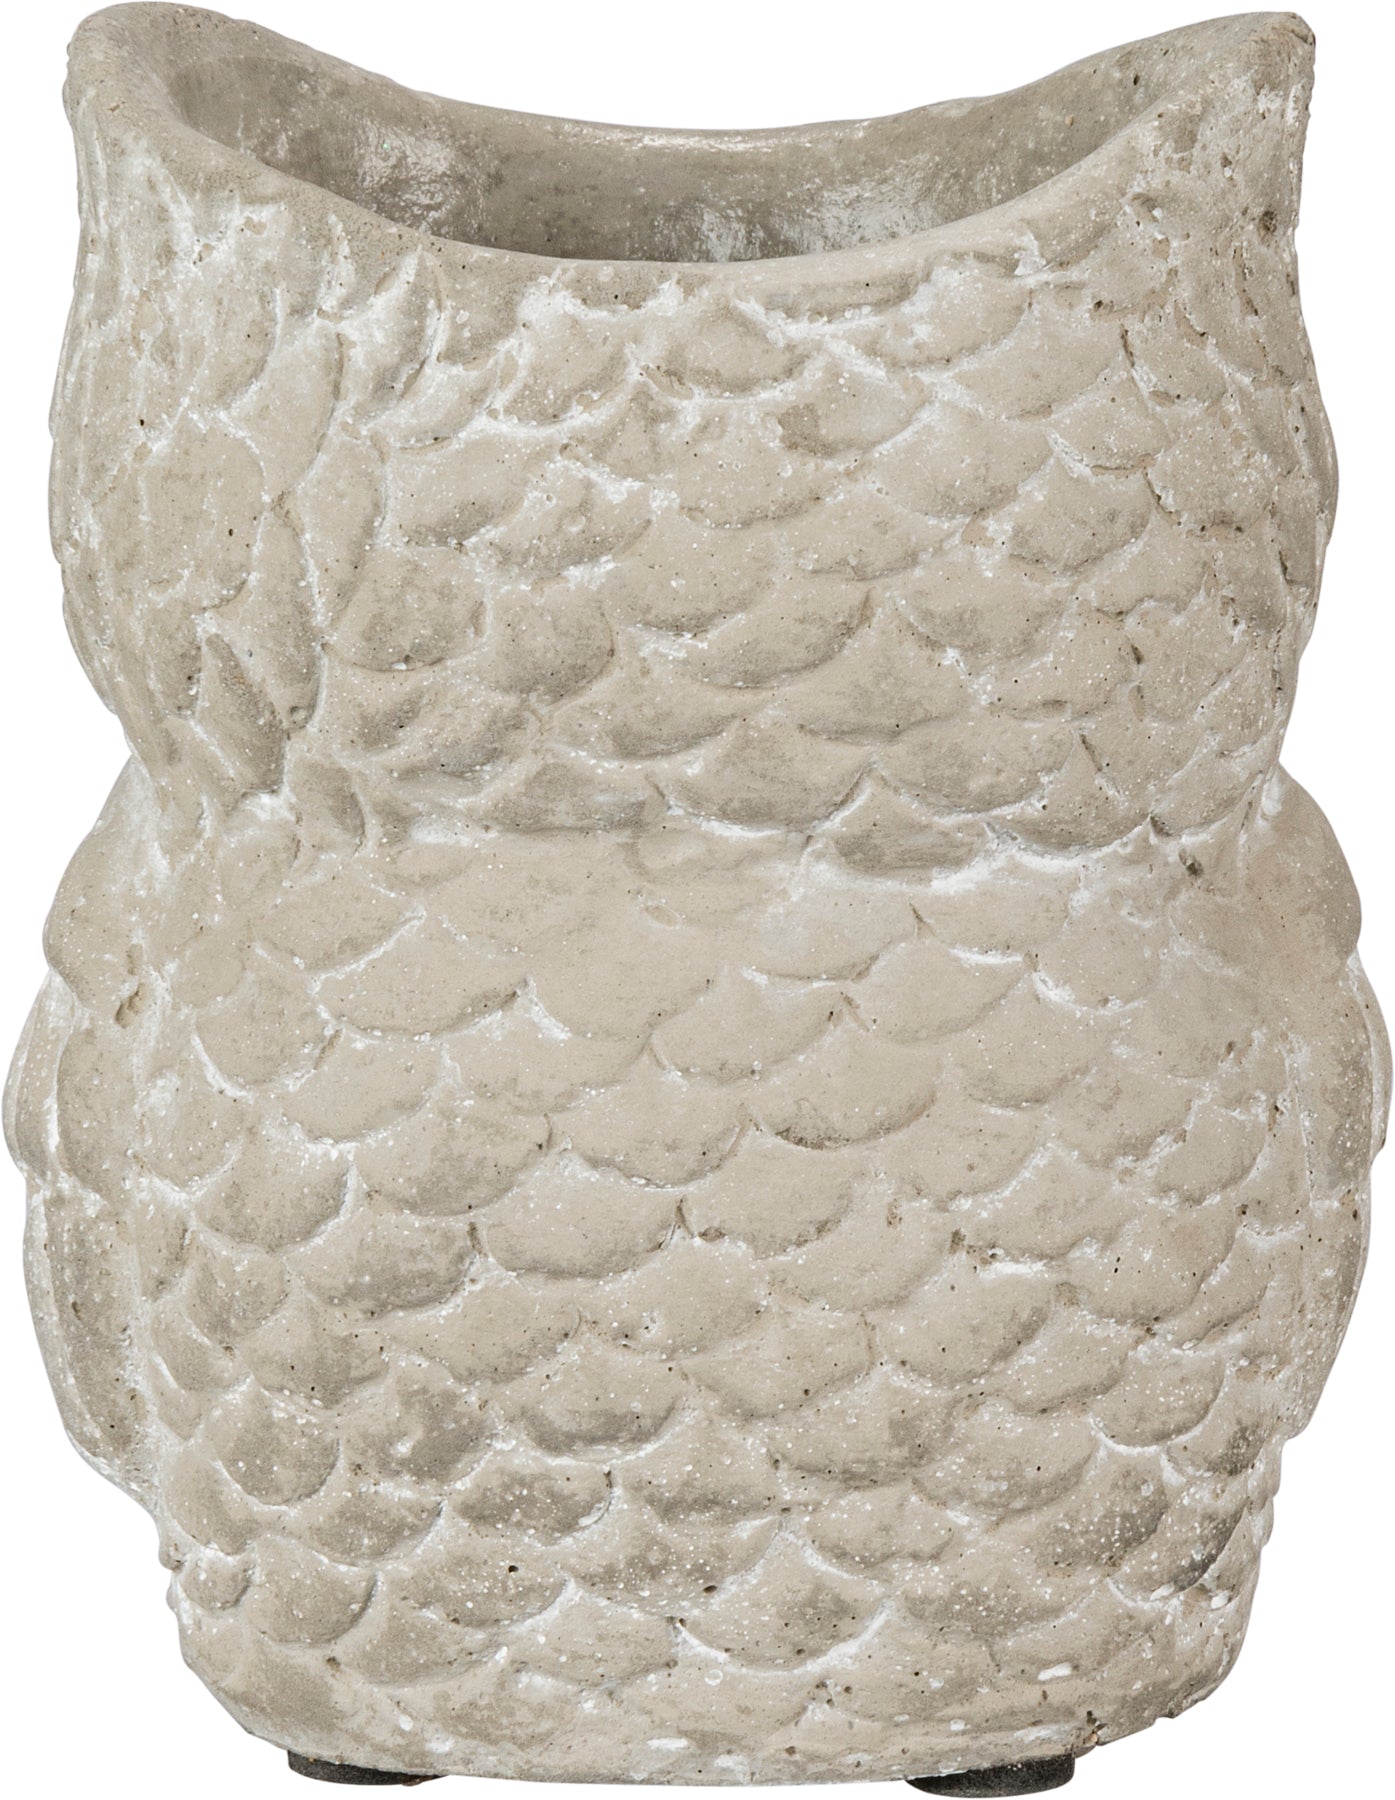 Cement Owl Planter Set